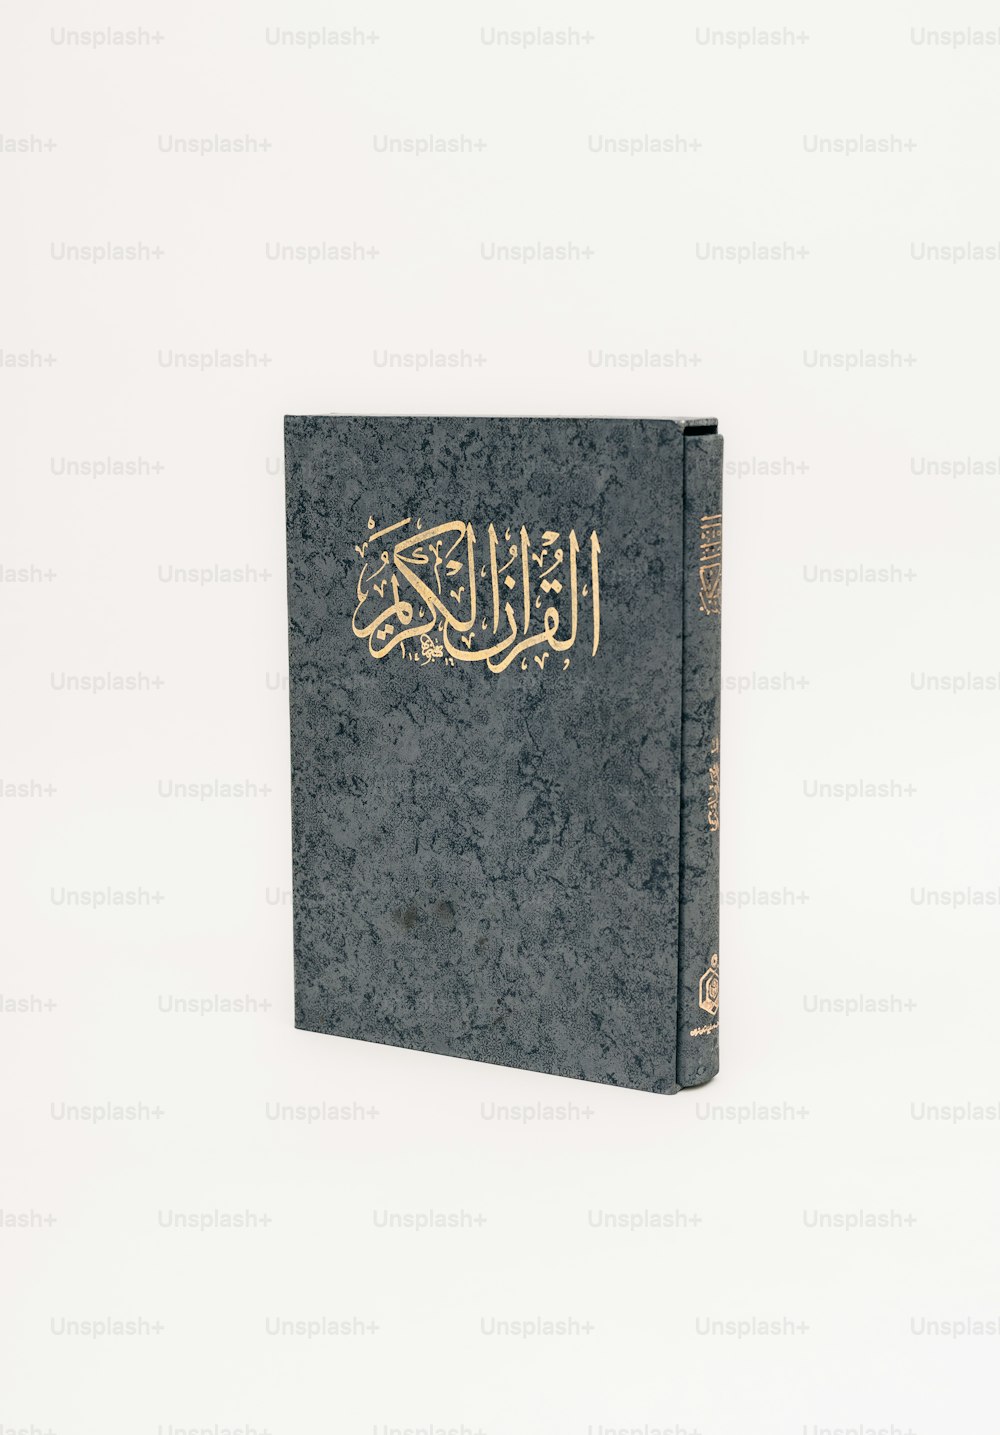 흰색 바탕에 아랍어 글씨가 쓰여진 책